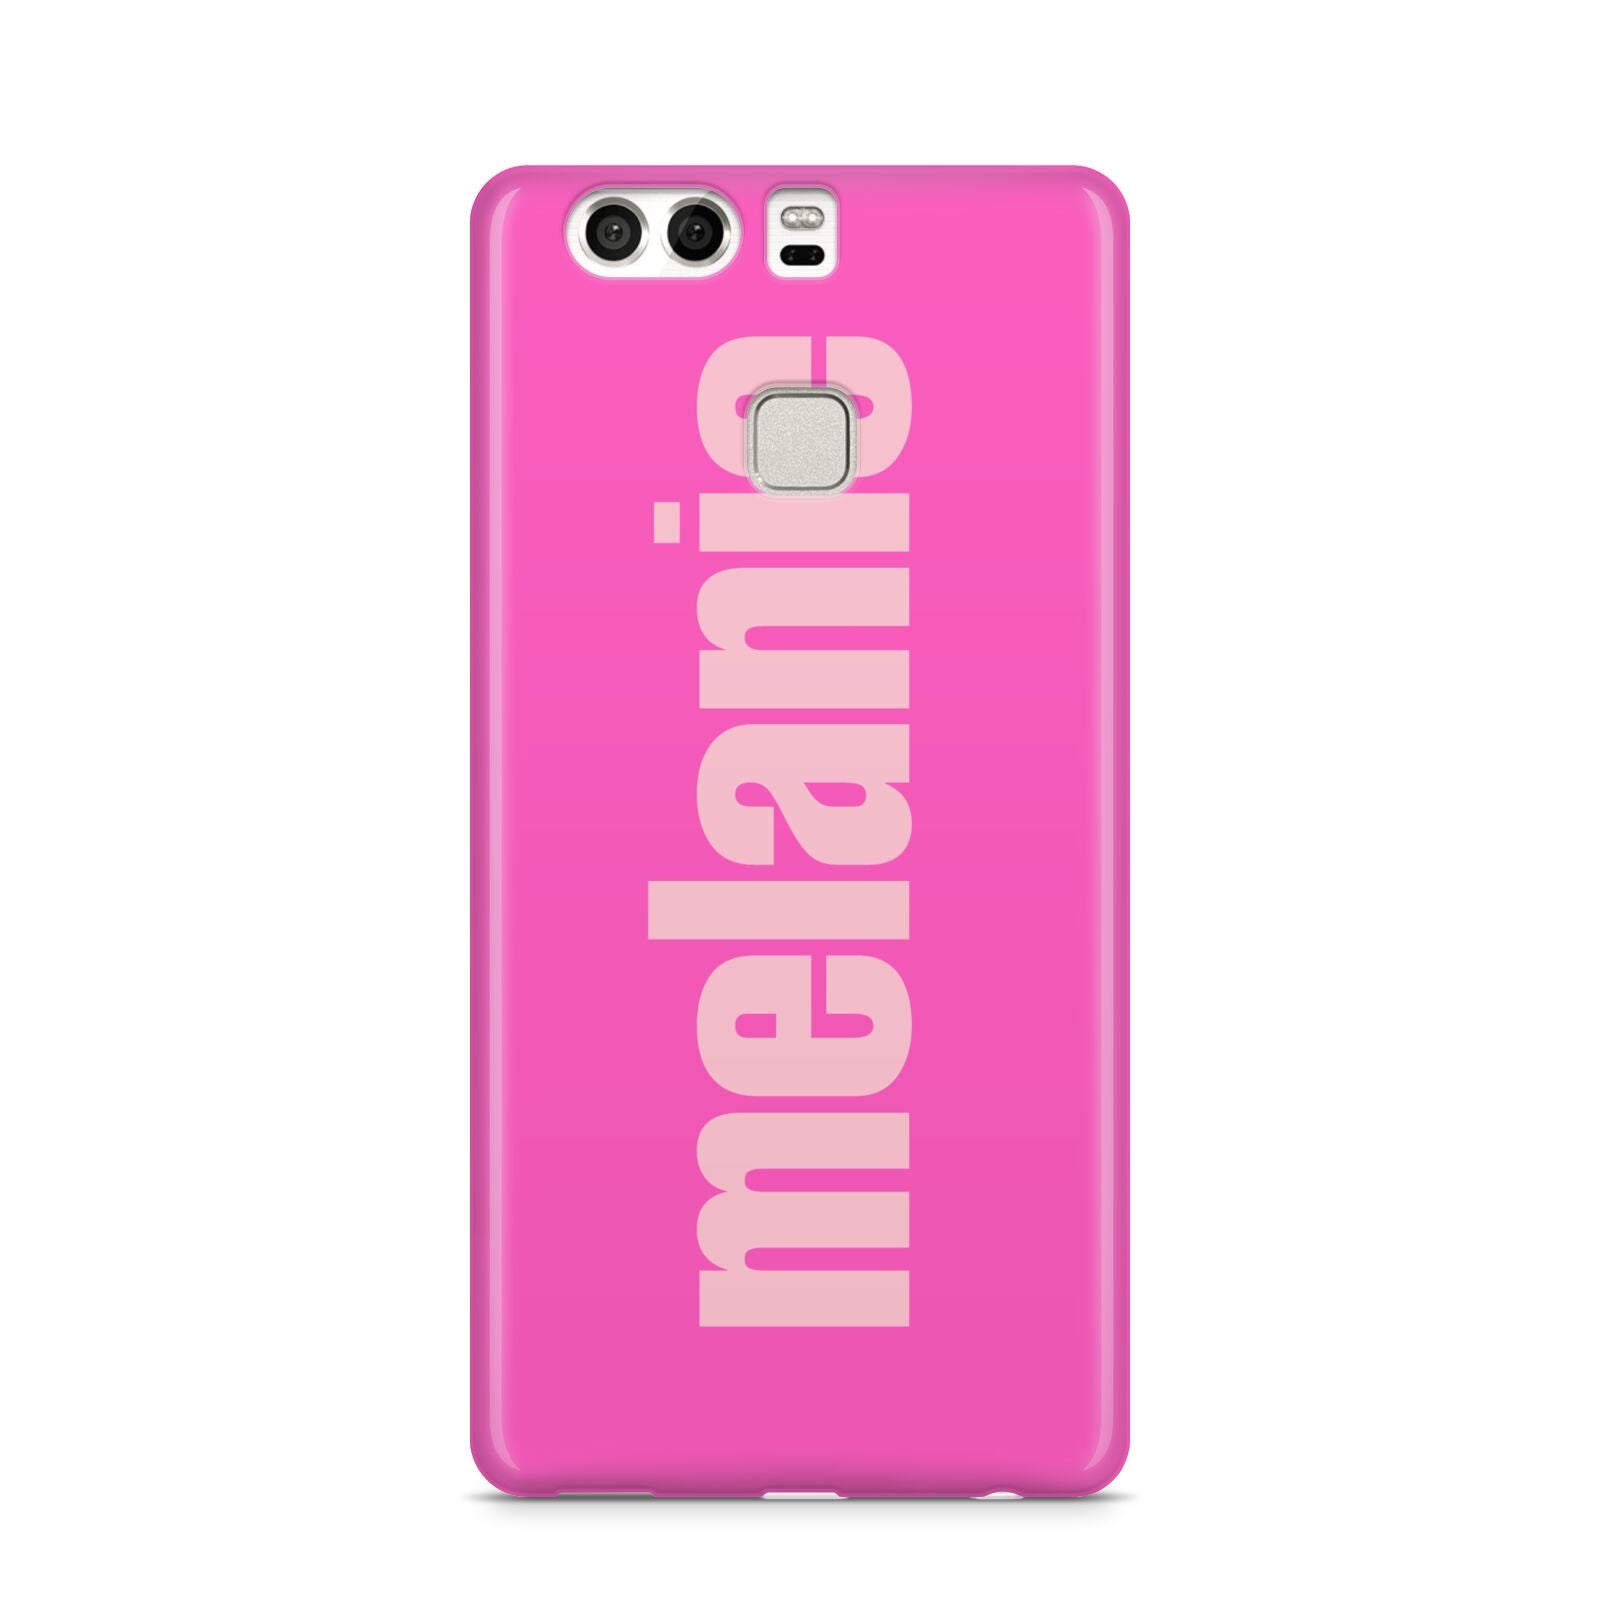 Personalised Pink Huawei P9 Case